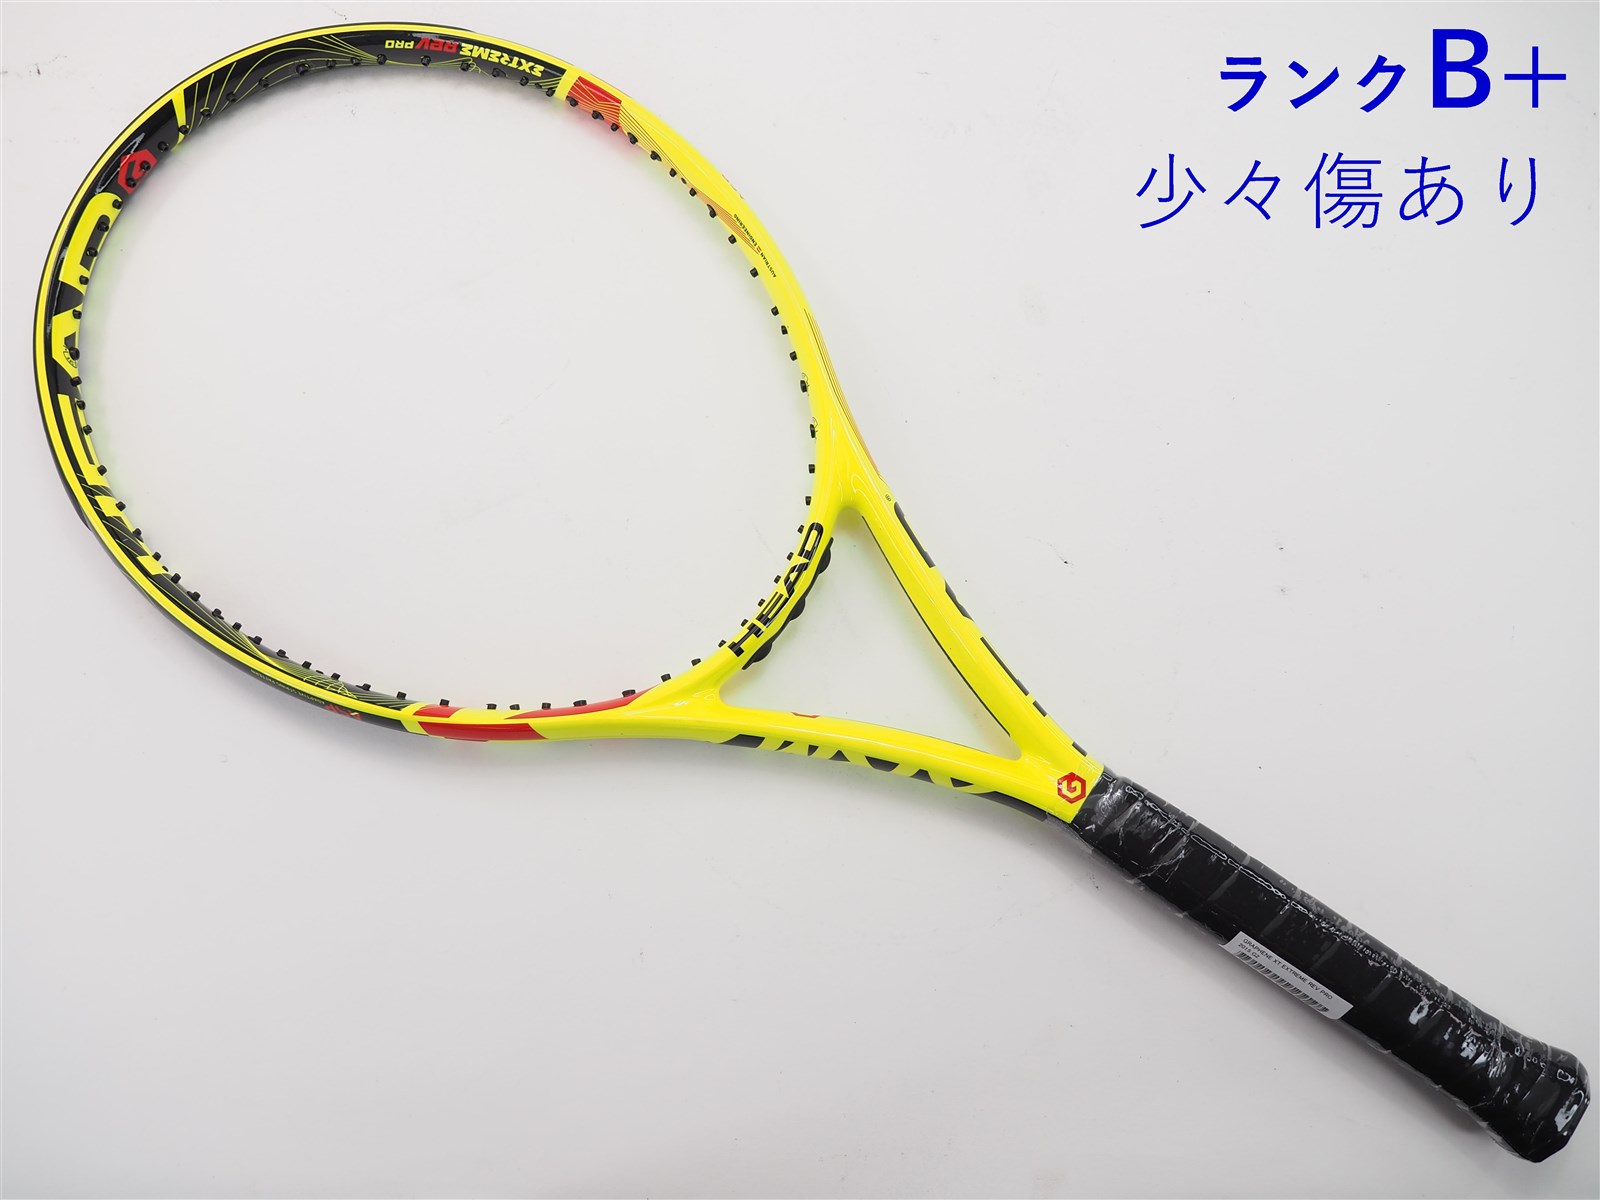 テニスラケット ヘッド グラフィン XT エクストリーム レフ プロ 2015年モデル (G2)HEAD GRAPHENE XT EXTREME REV PRO 2015